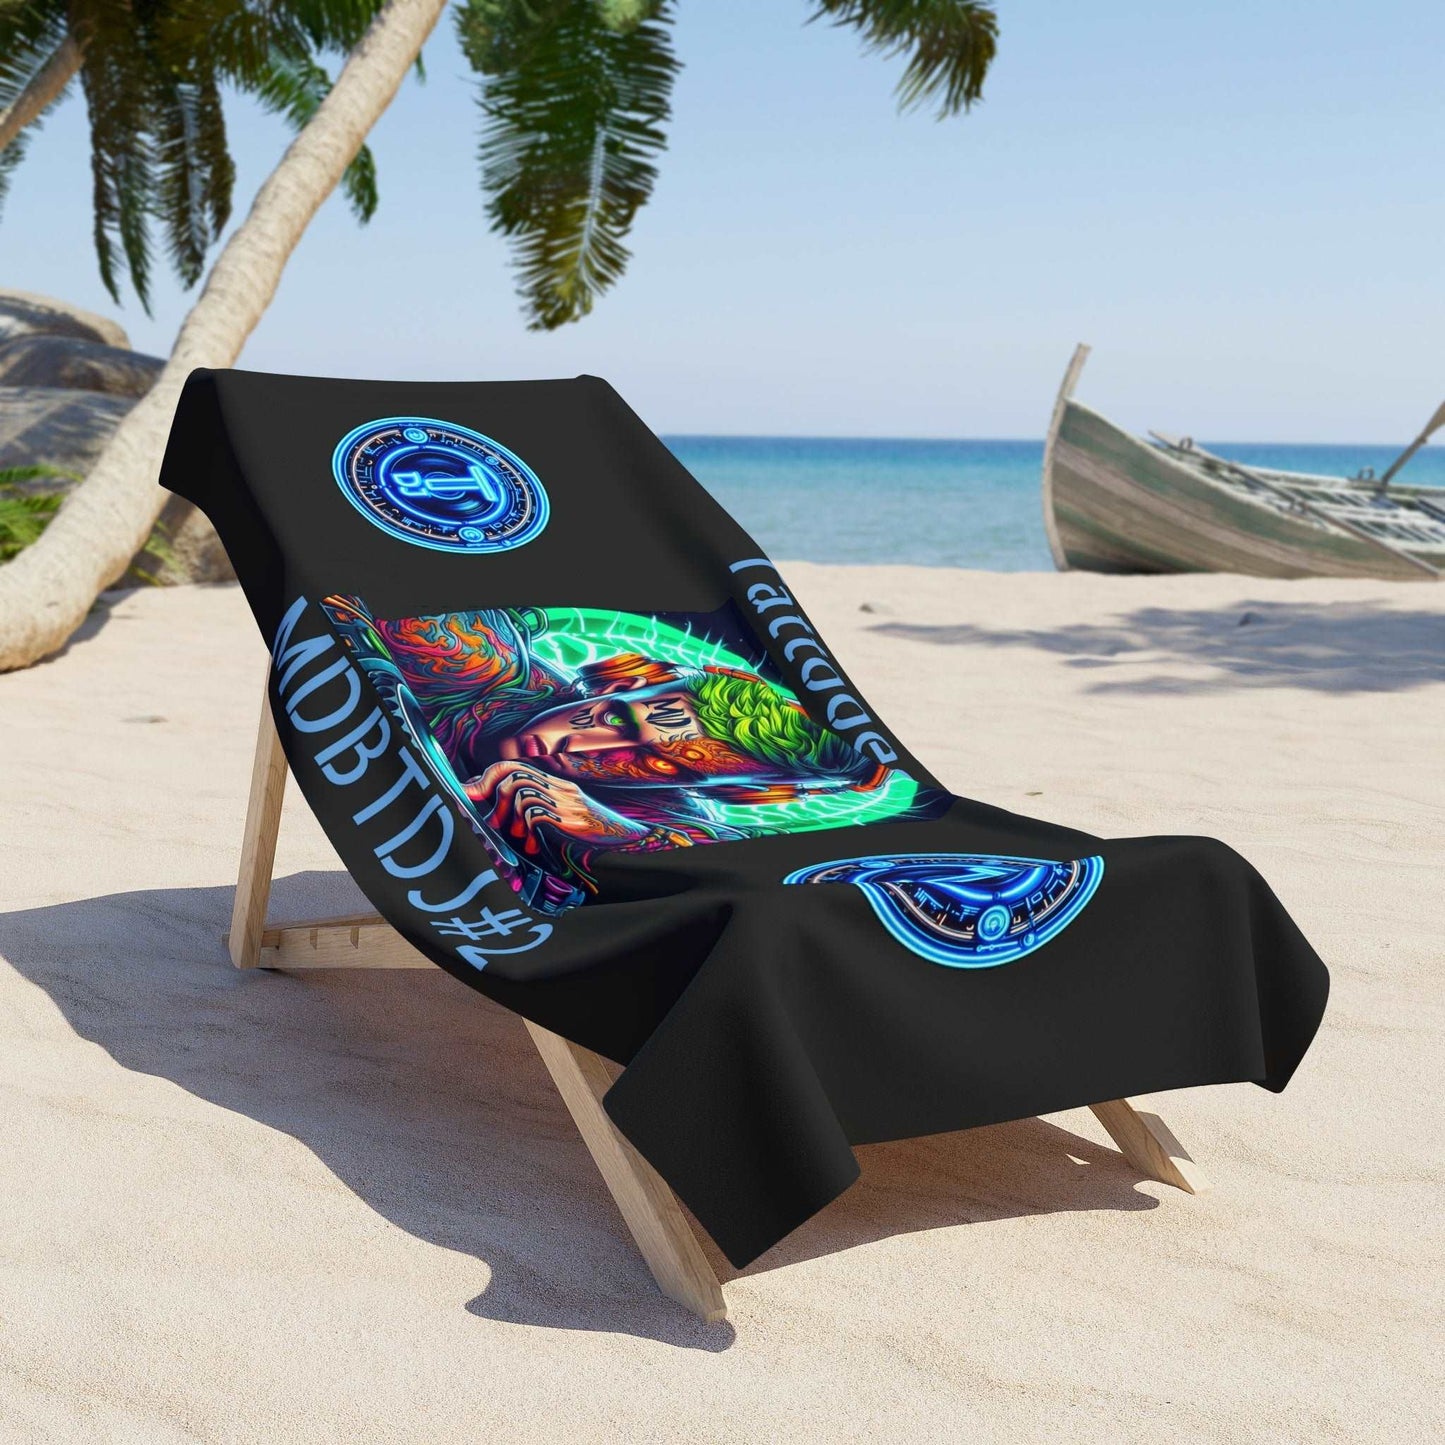 MDBTDJ#2 Beach Towel Tattooed Dj's Limited Edition